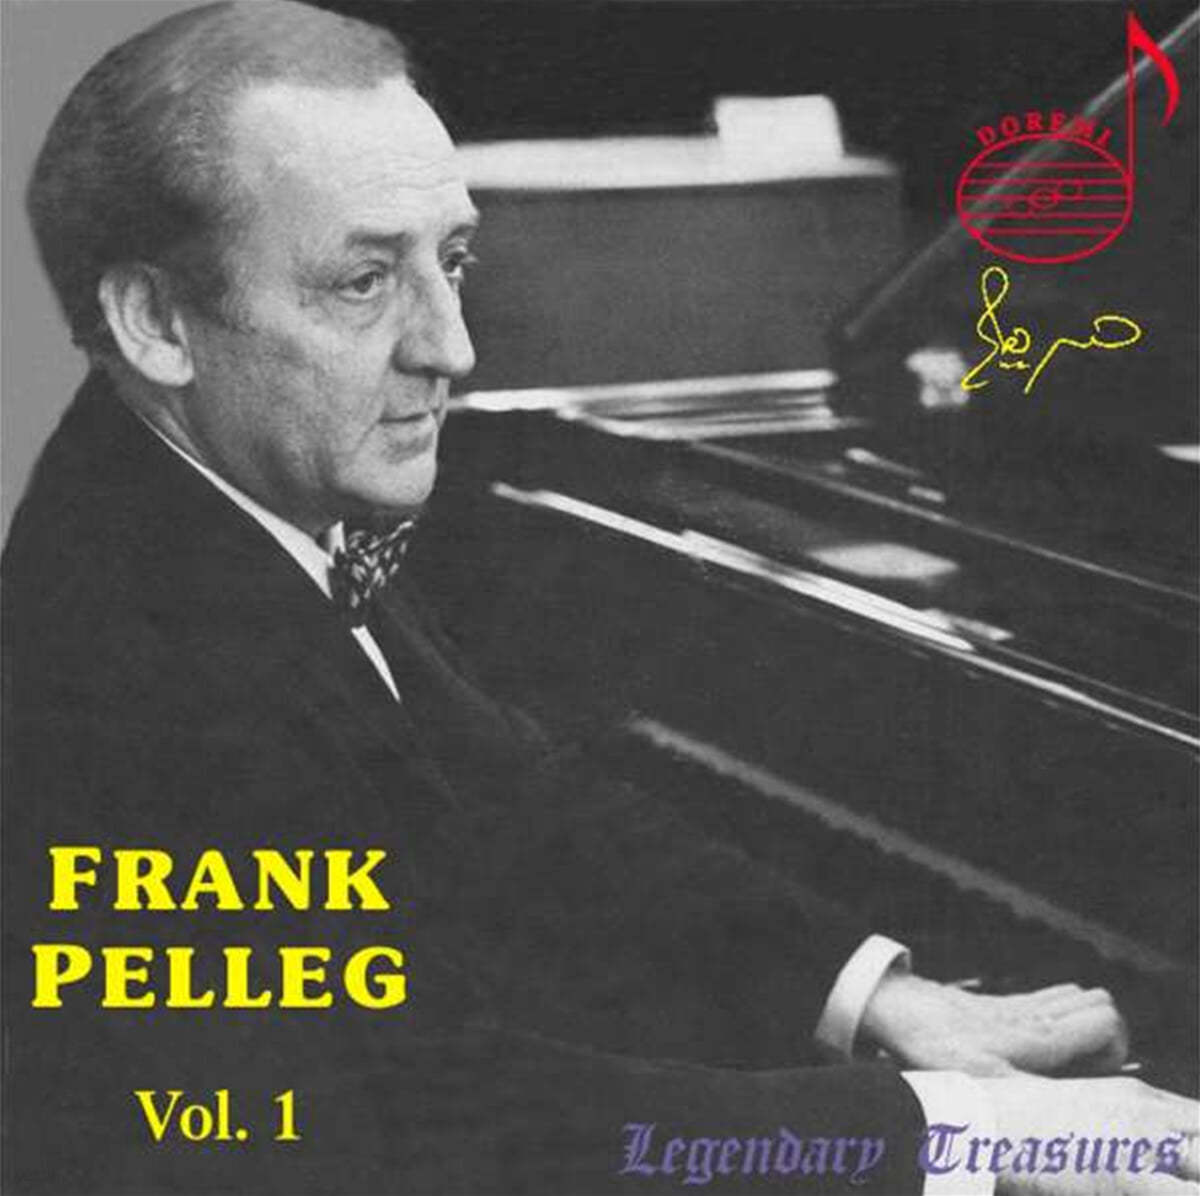 프랑크 펠레그 1집 (Frank Pelleg: Legendary Treasures Vol. 1) 